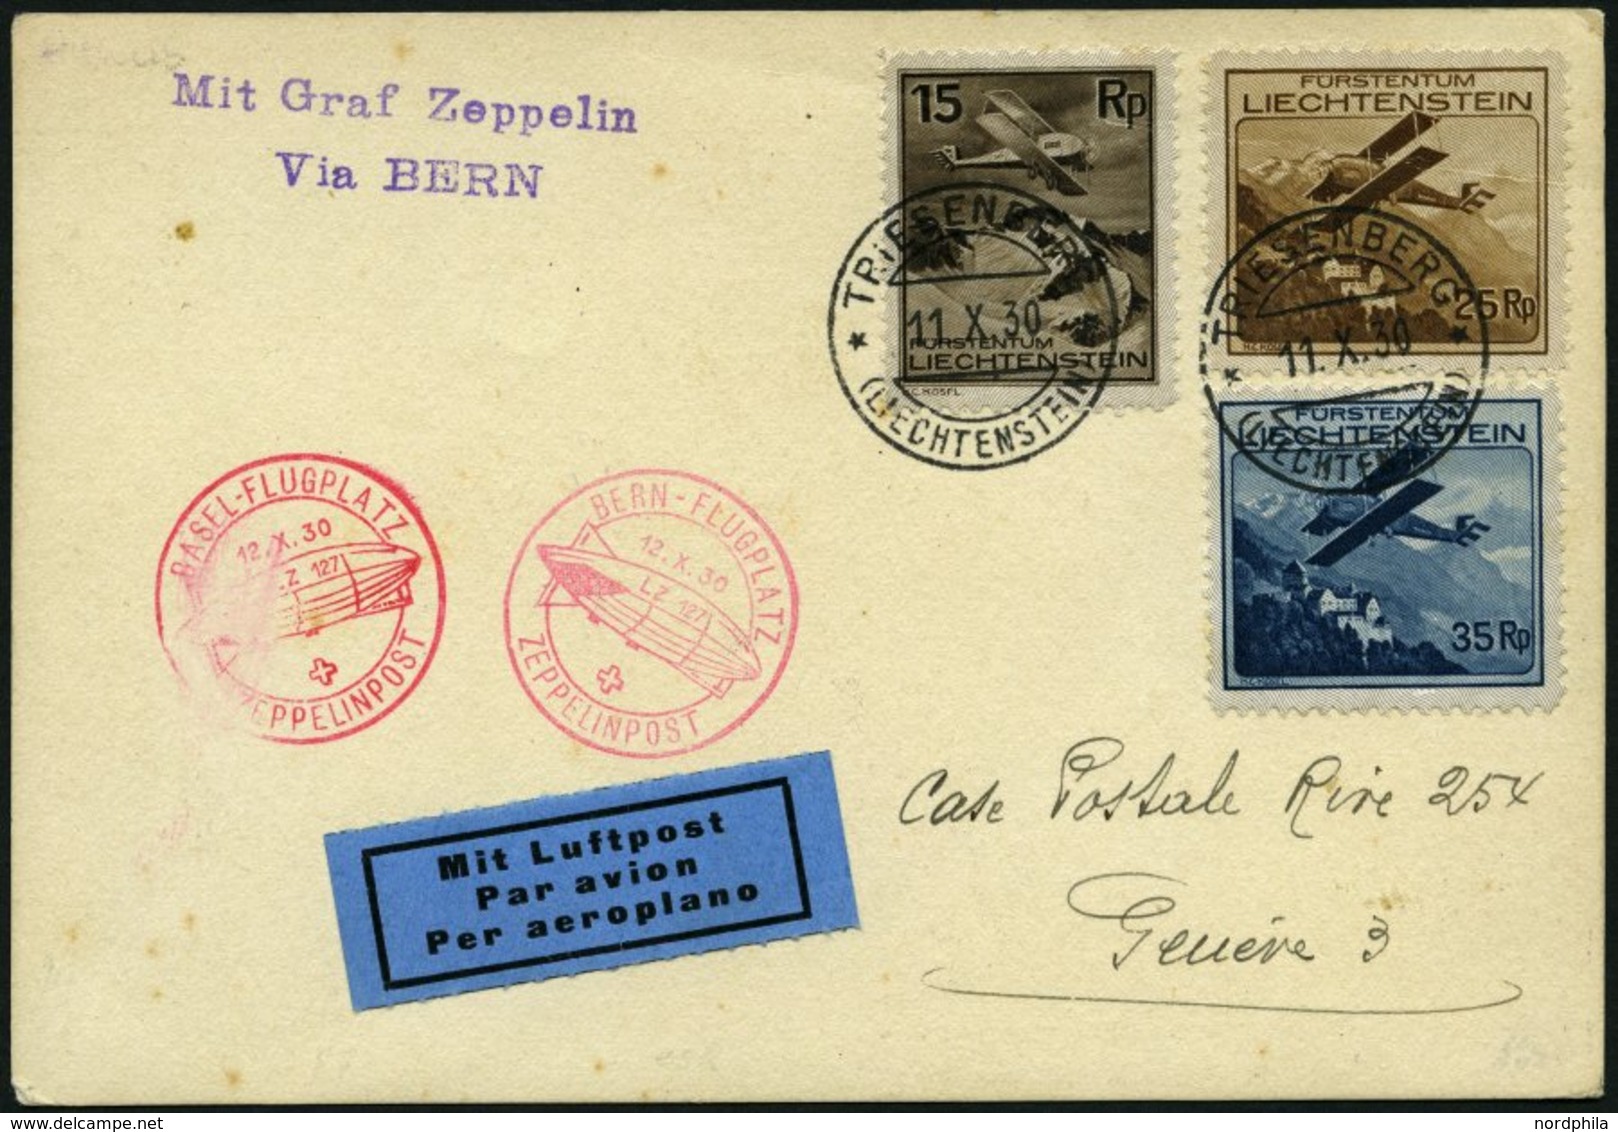 ZULEITUNGSPOST 95 BRIEF, Liechtenstein: 1930, Basel-Zürich, Frankiert Mit Mi.Nr. 108, 110 Und 111, Karte Feinst - Zeppeline